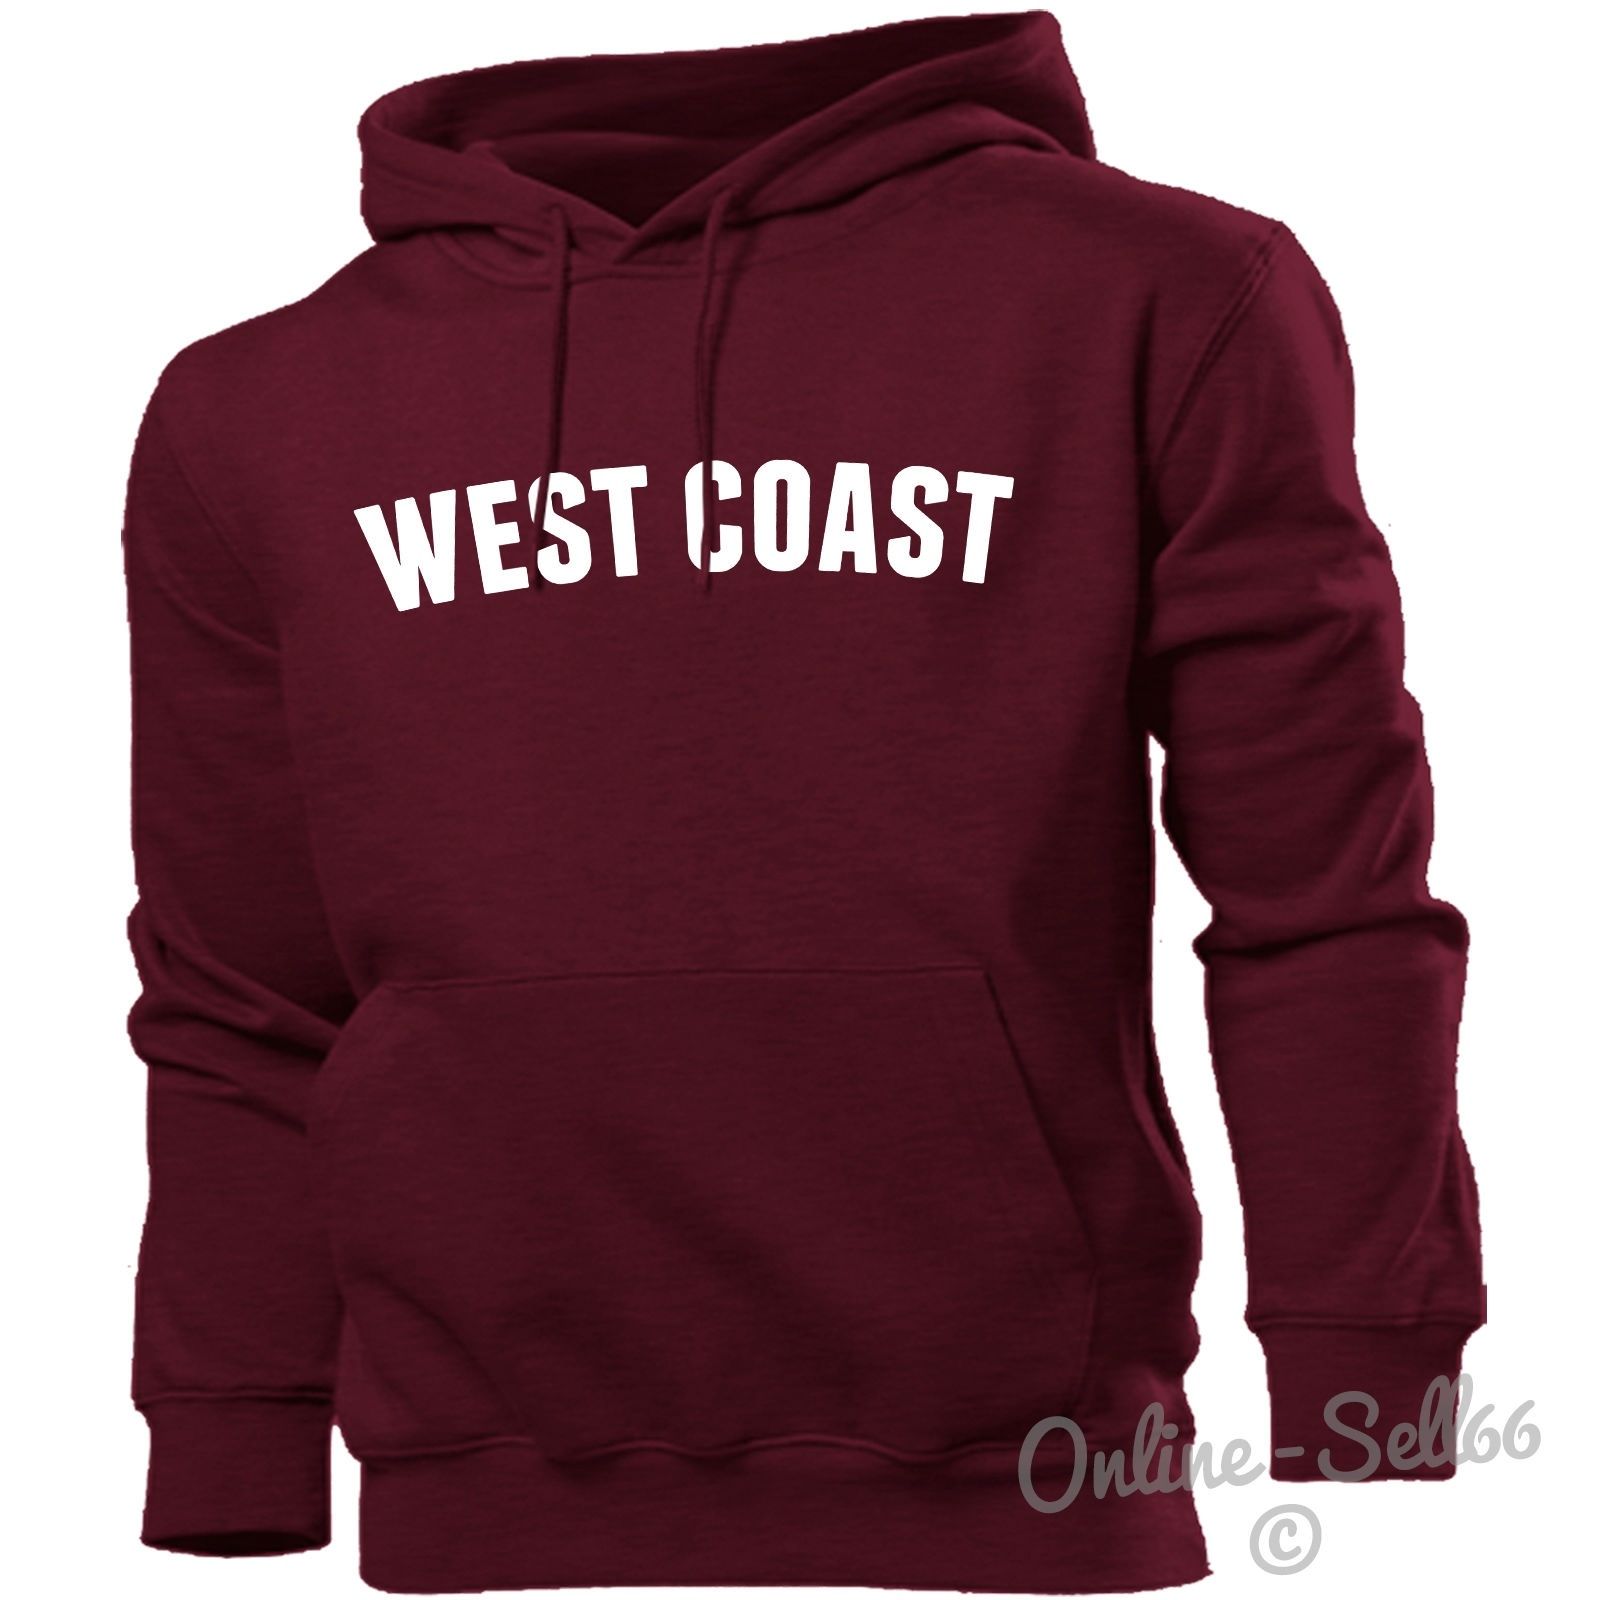 los angeles west coast usa sweatshirt